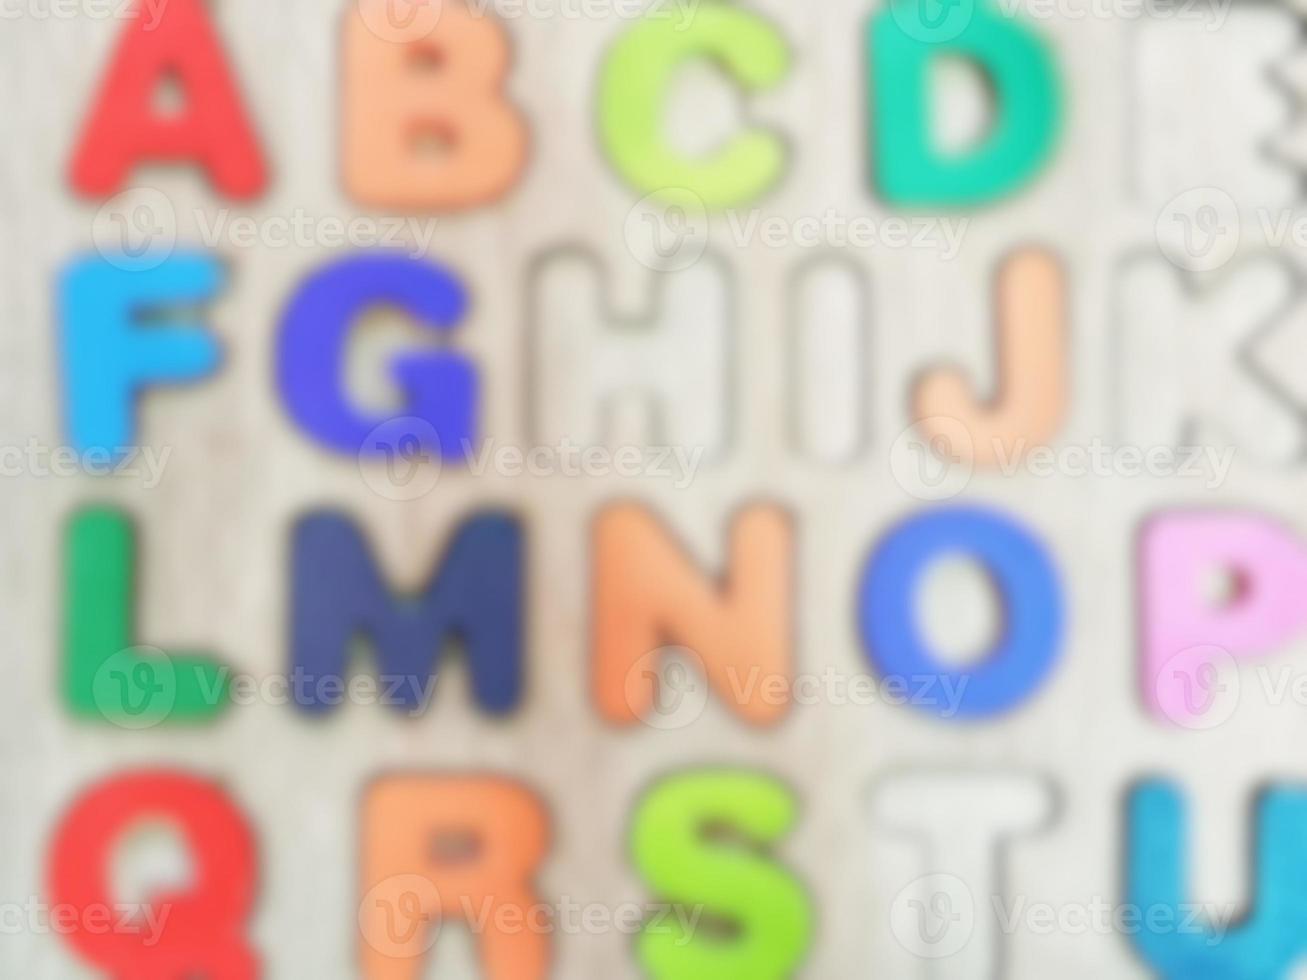 Blur or defocused photo of alphabet set